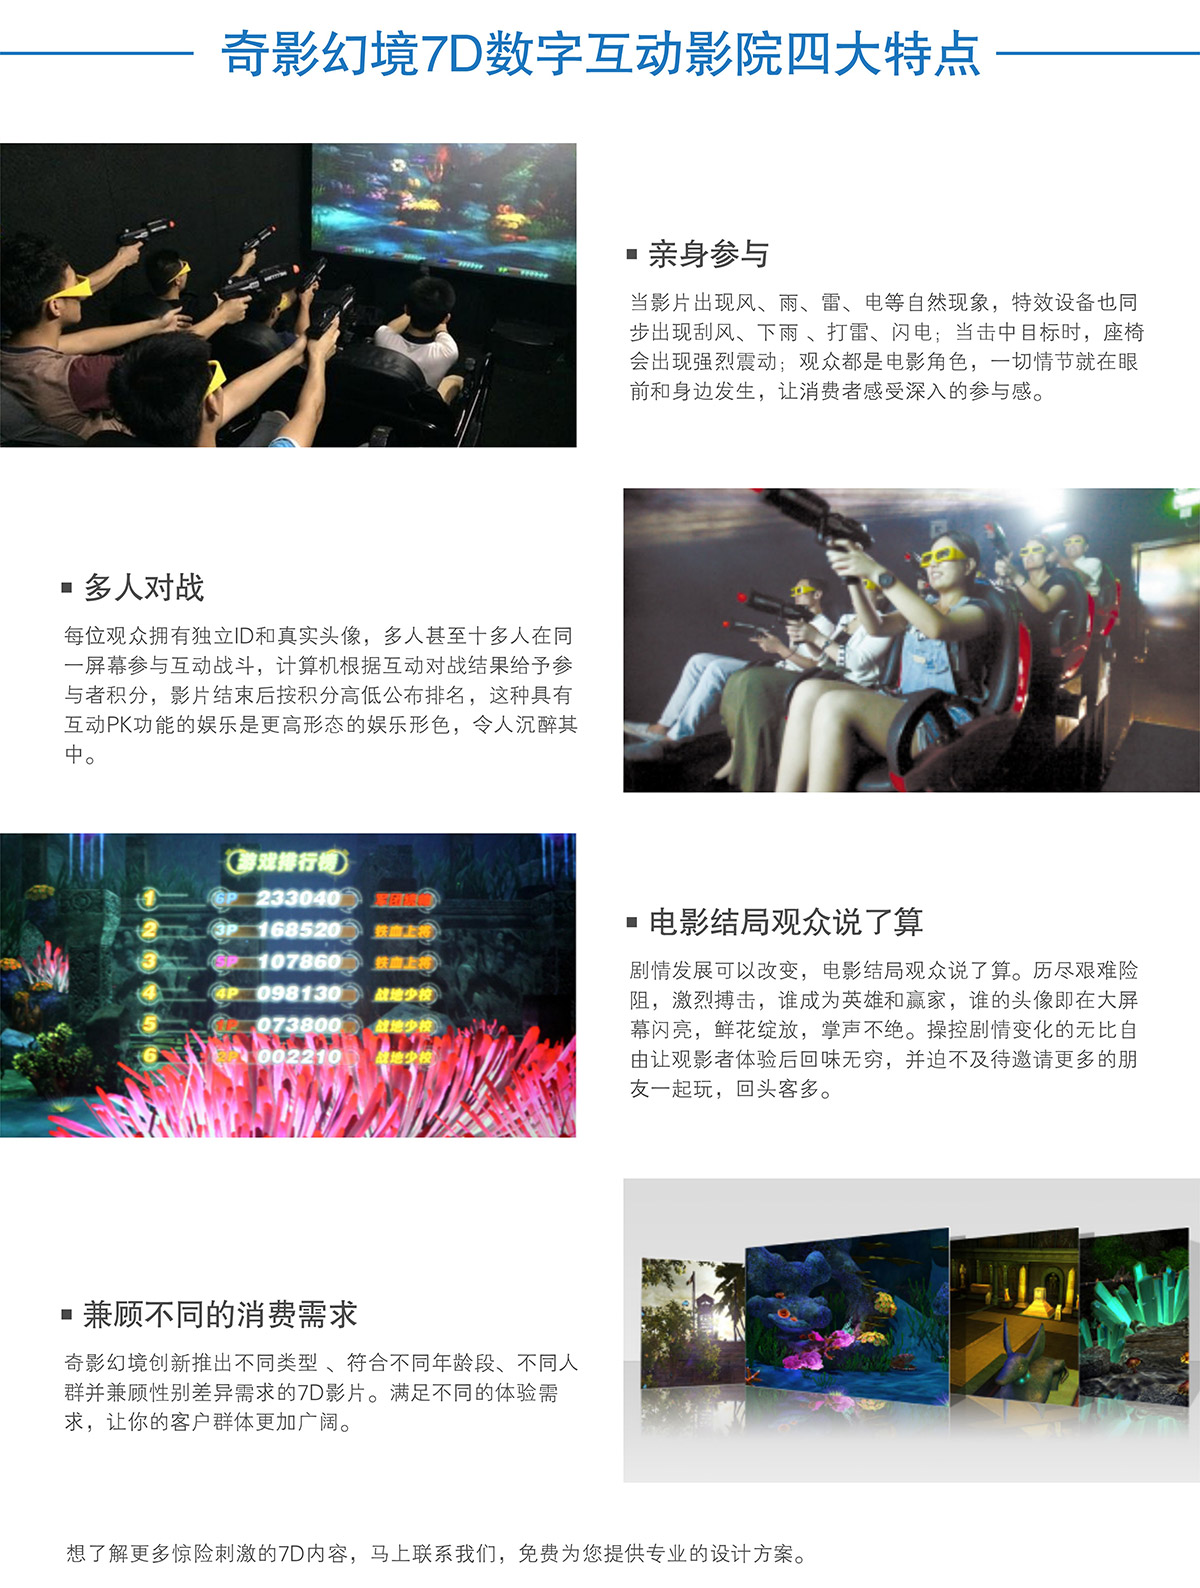 重庆7D数字互动影院四大特点.jpg